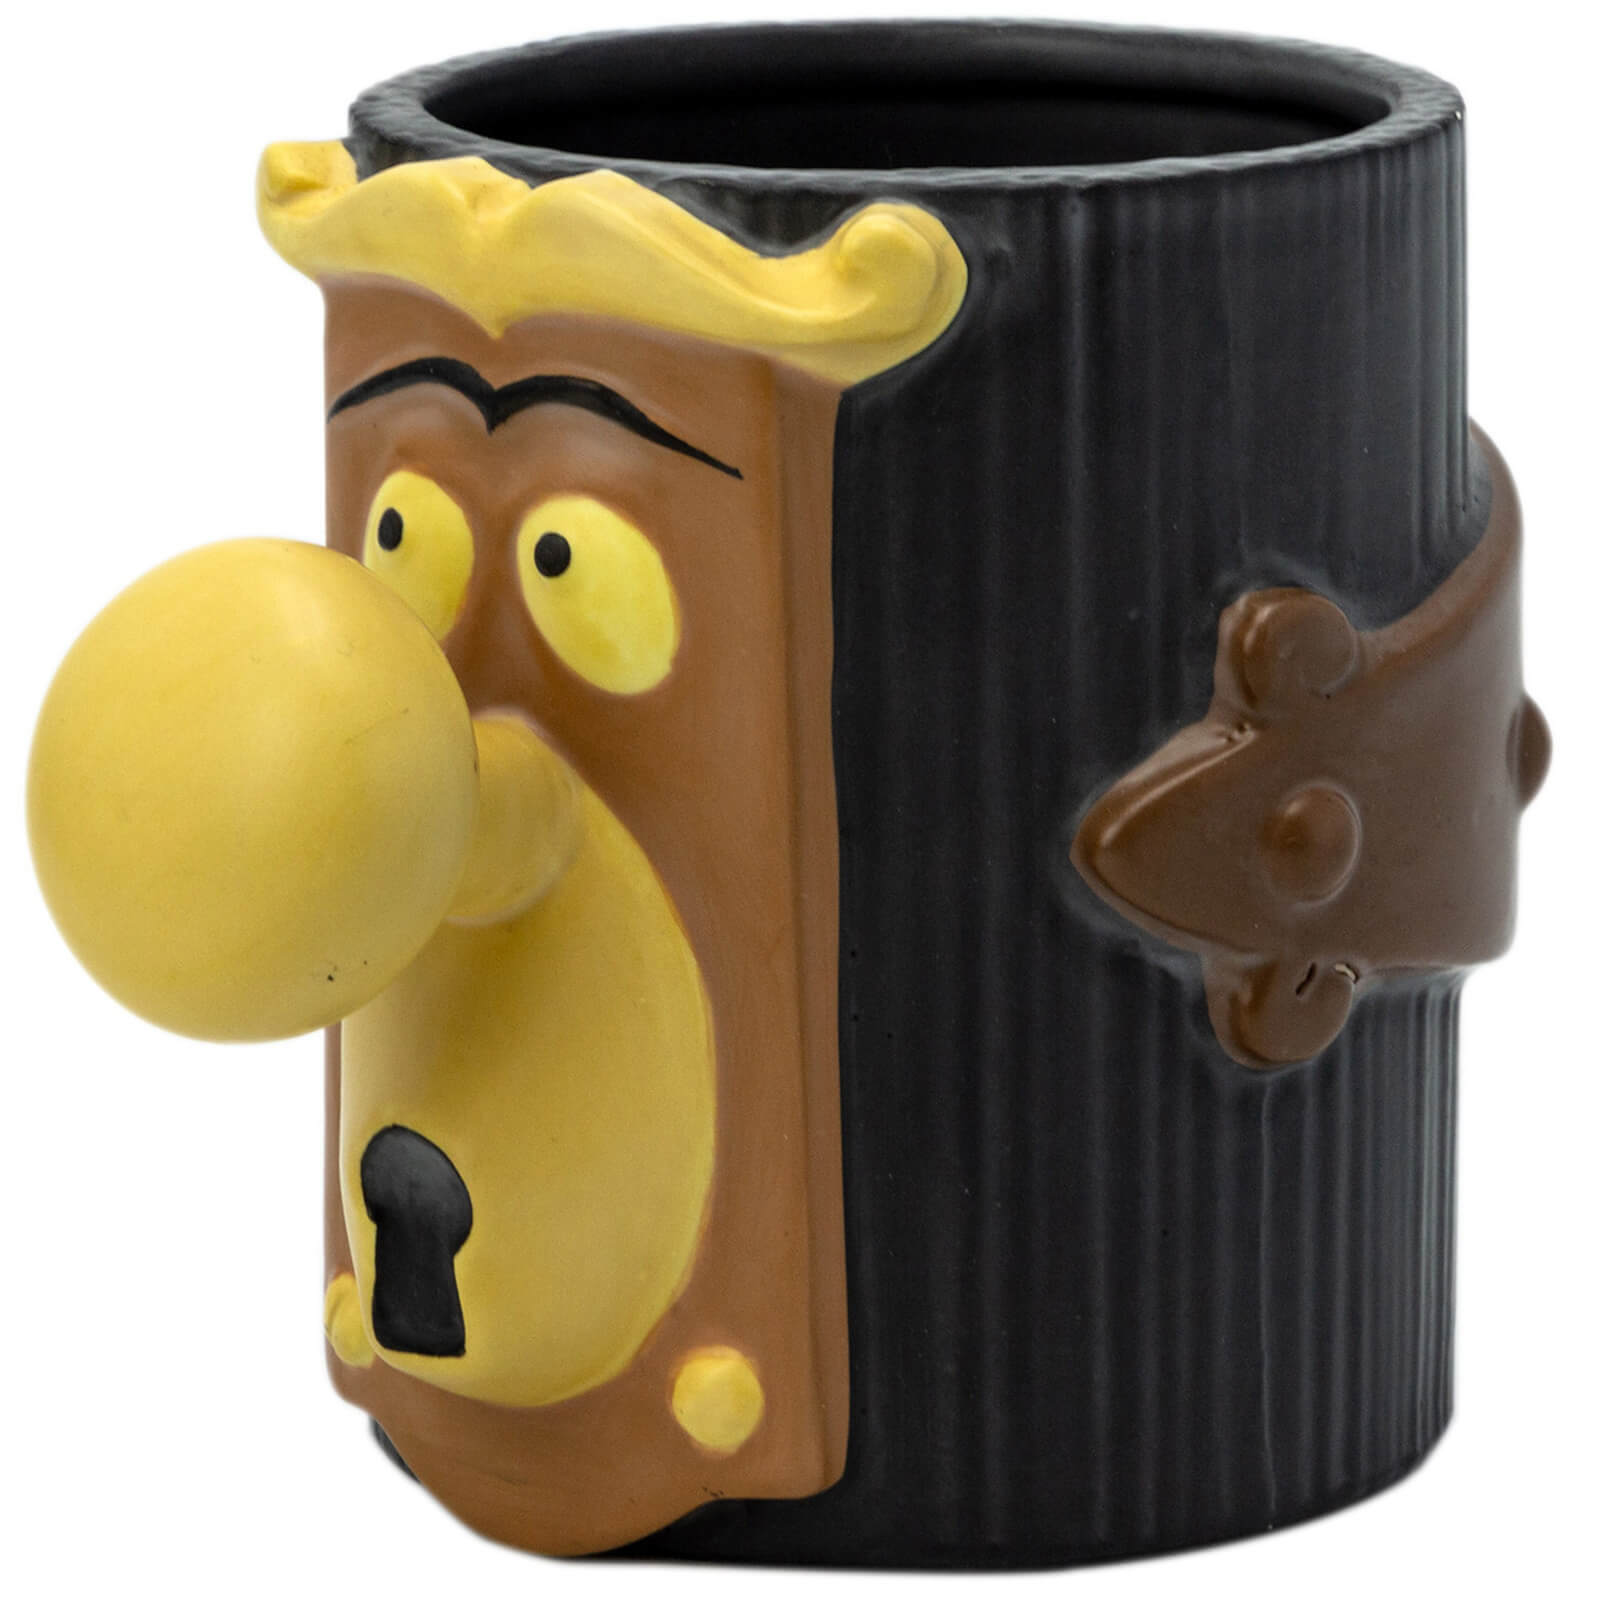 Abysse Disney alice in wonderland 3d shaped mug